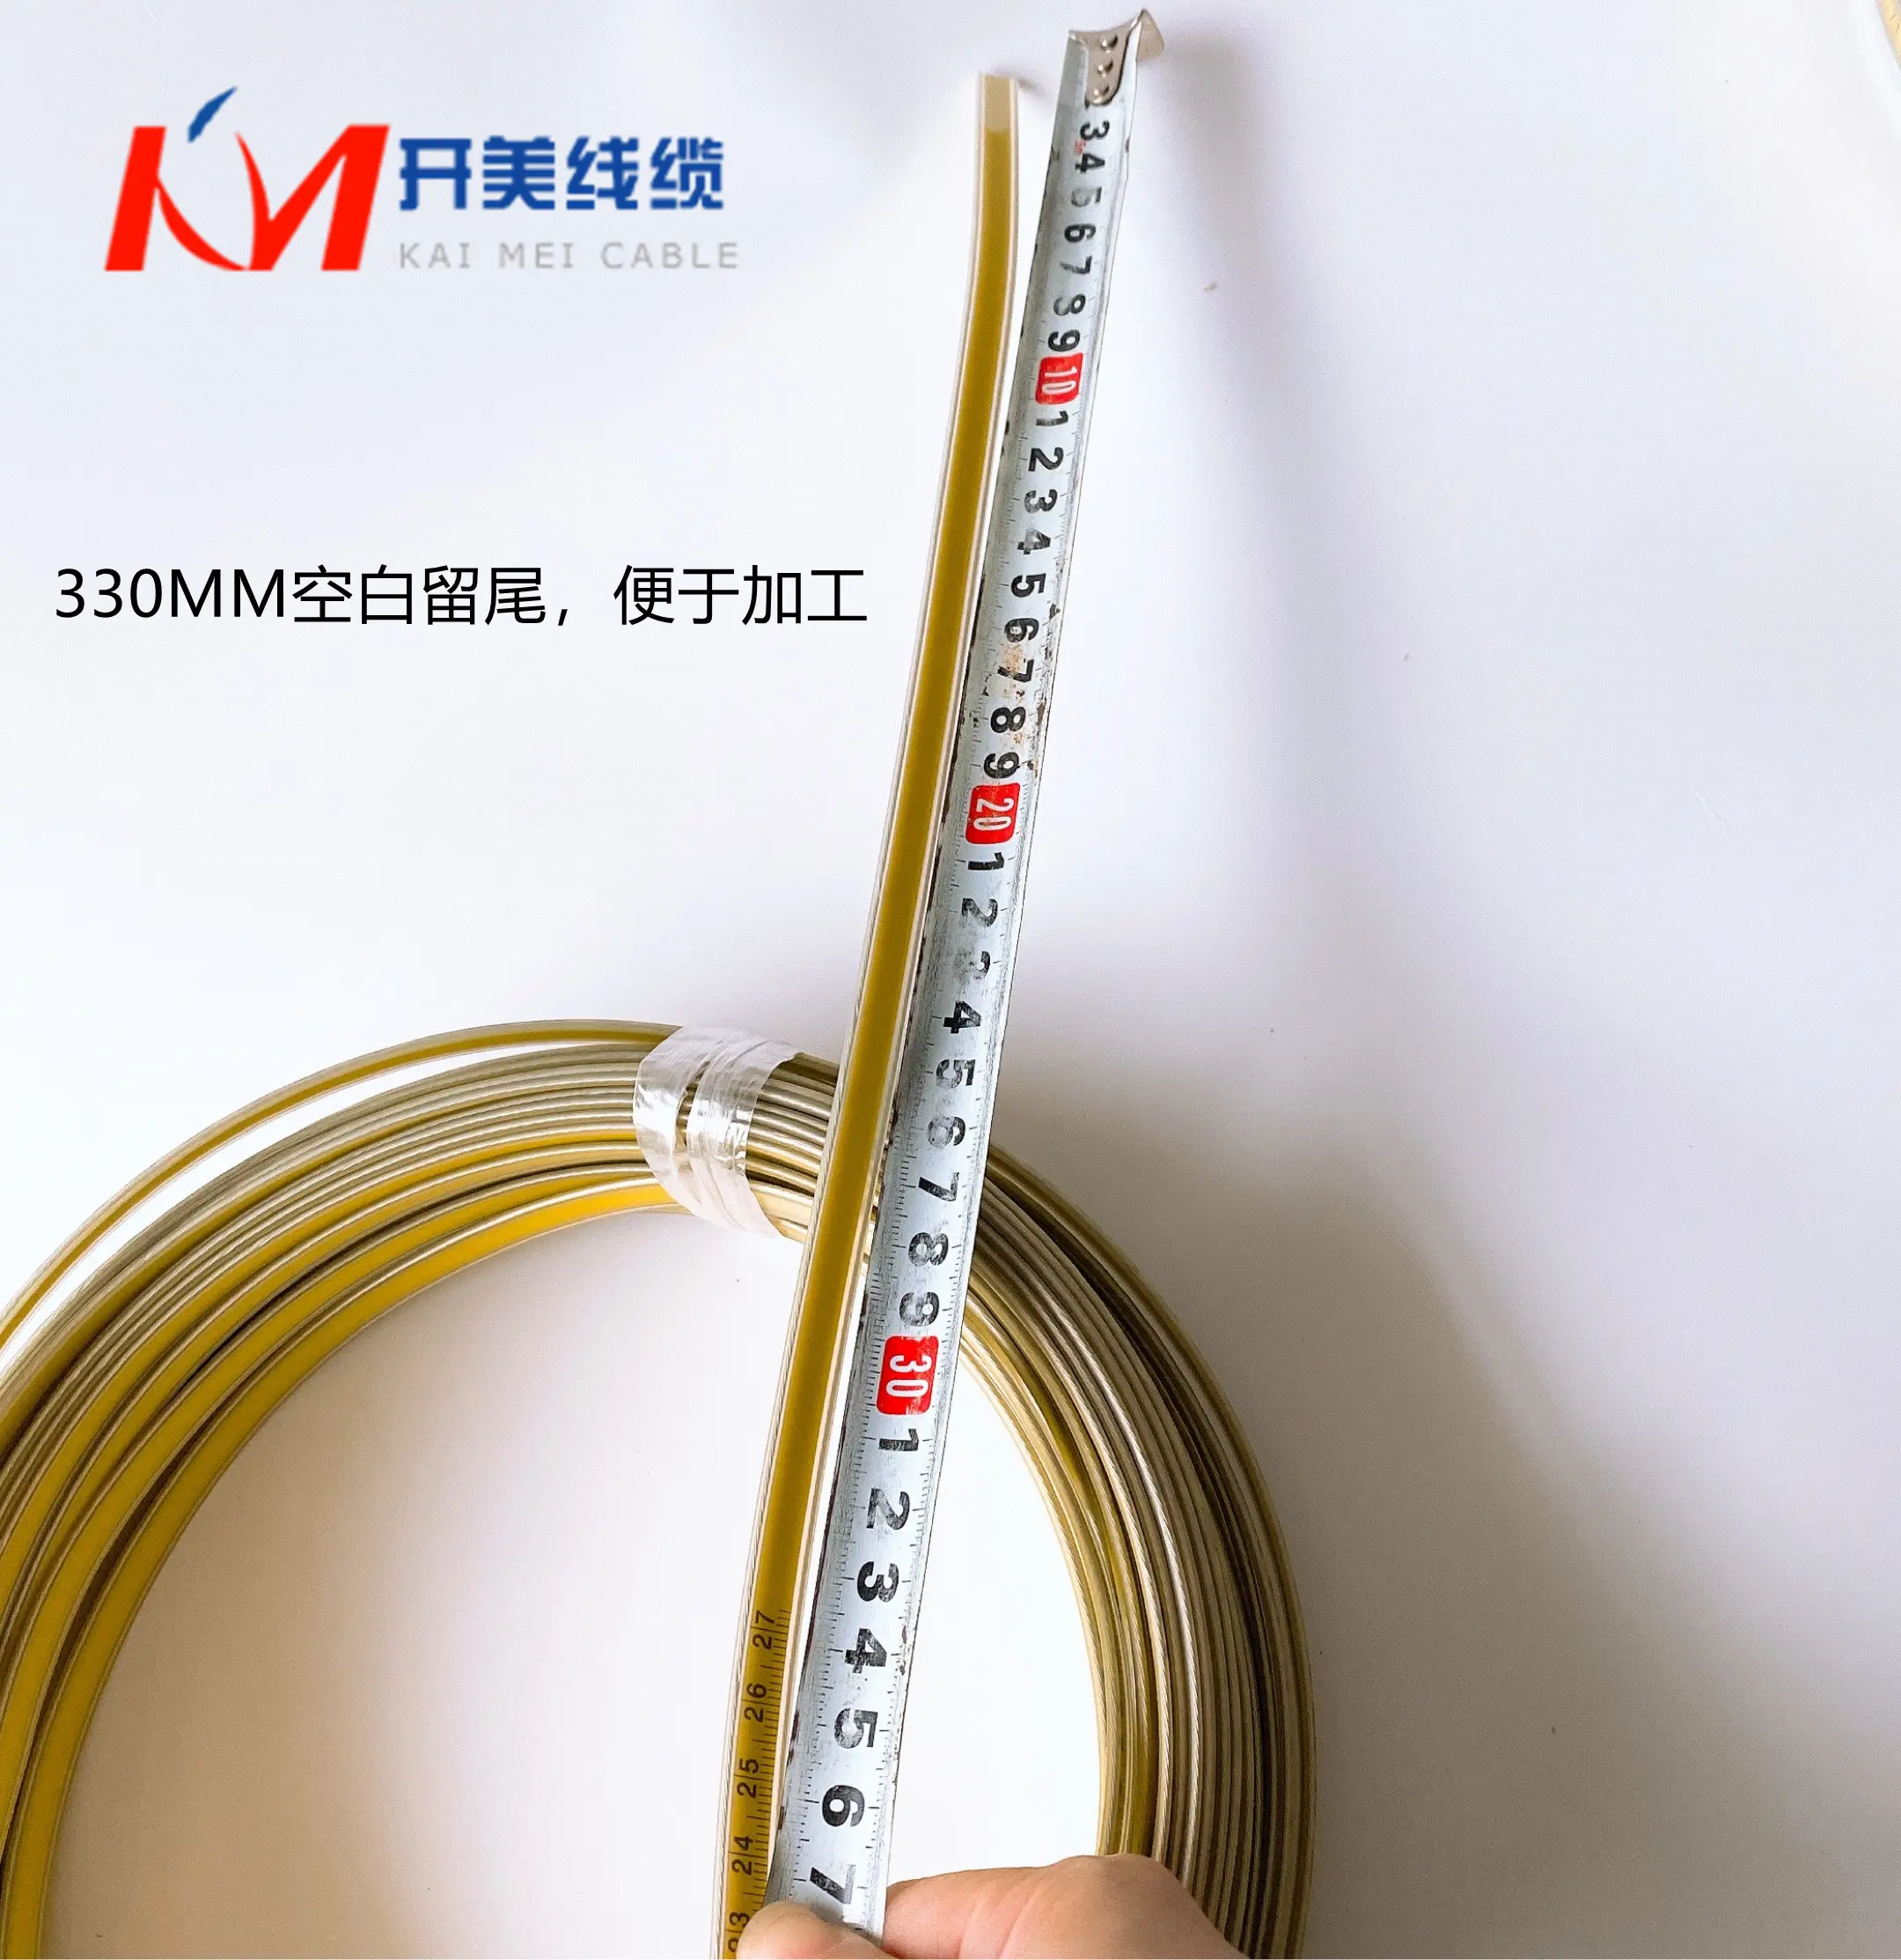 100M Water Niveau Meting Olieveld Olie Niveau Olie Goed Mine Meten Stalen Liniaal Instrument Standaard Kabel Stalen Liniaal kabel